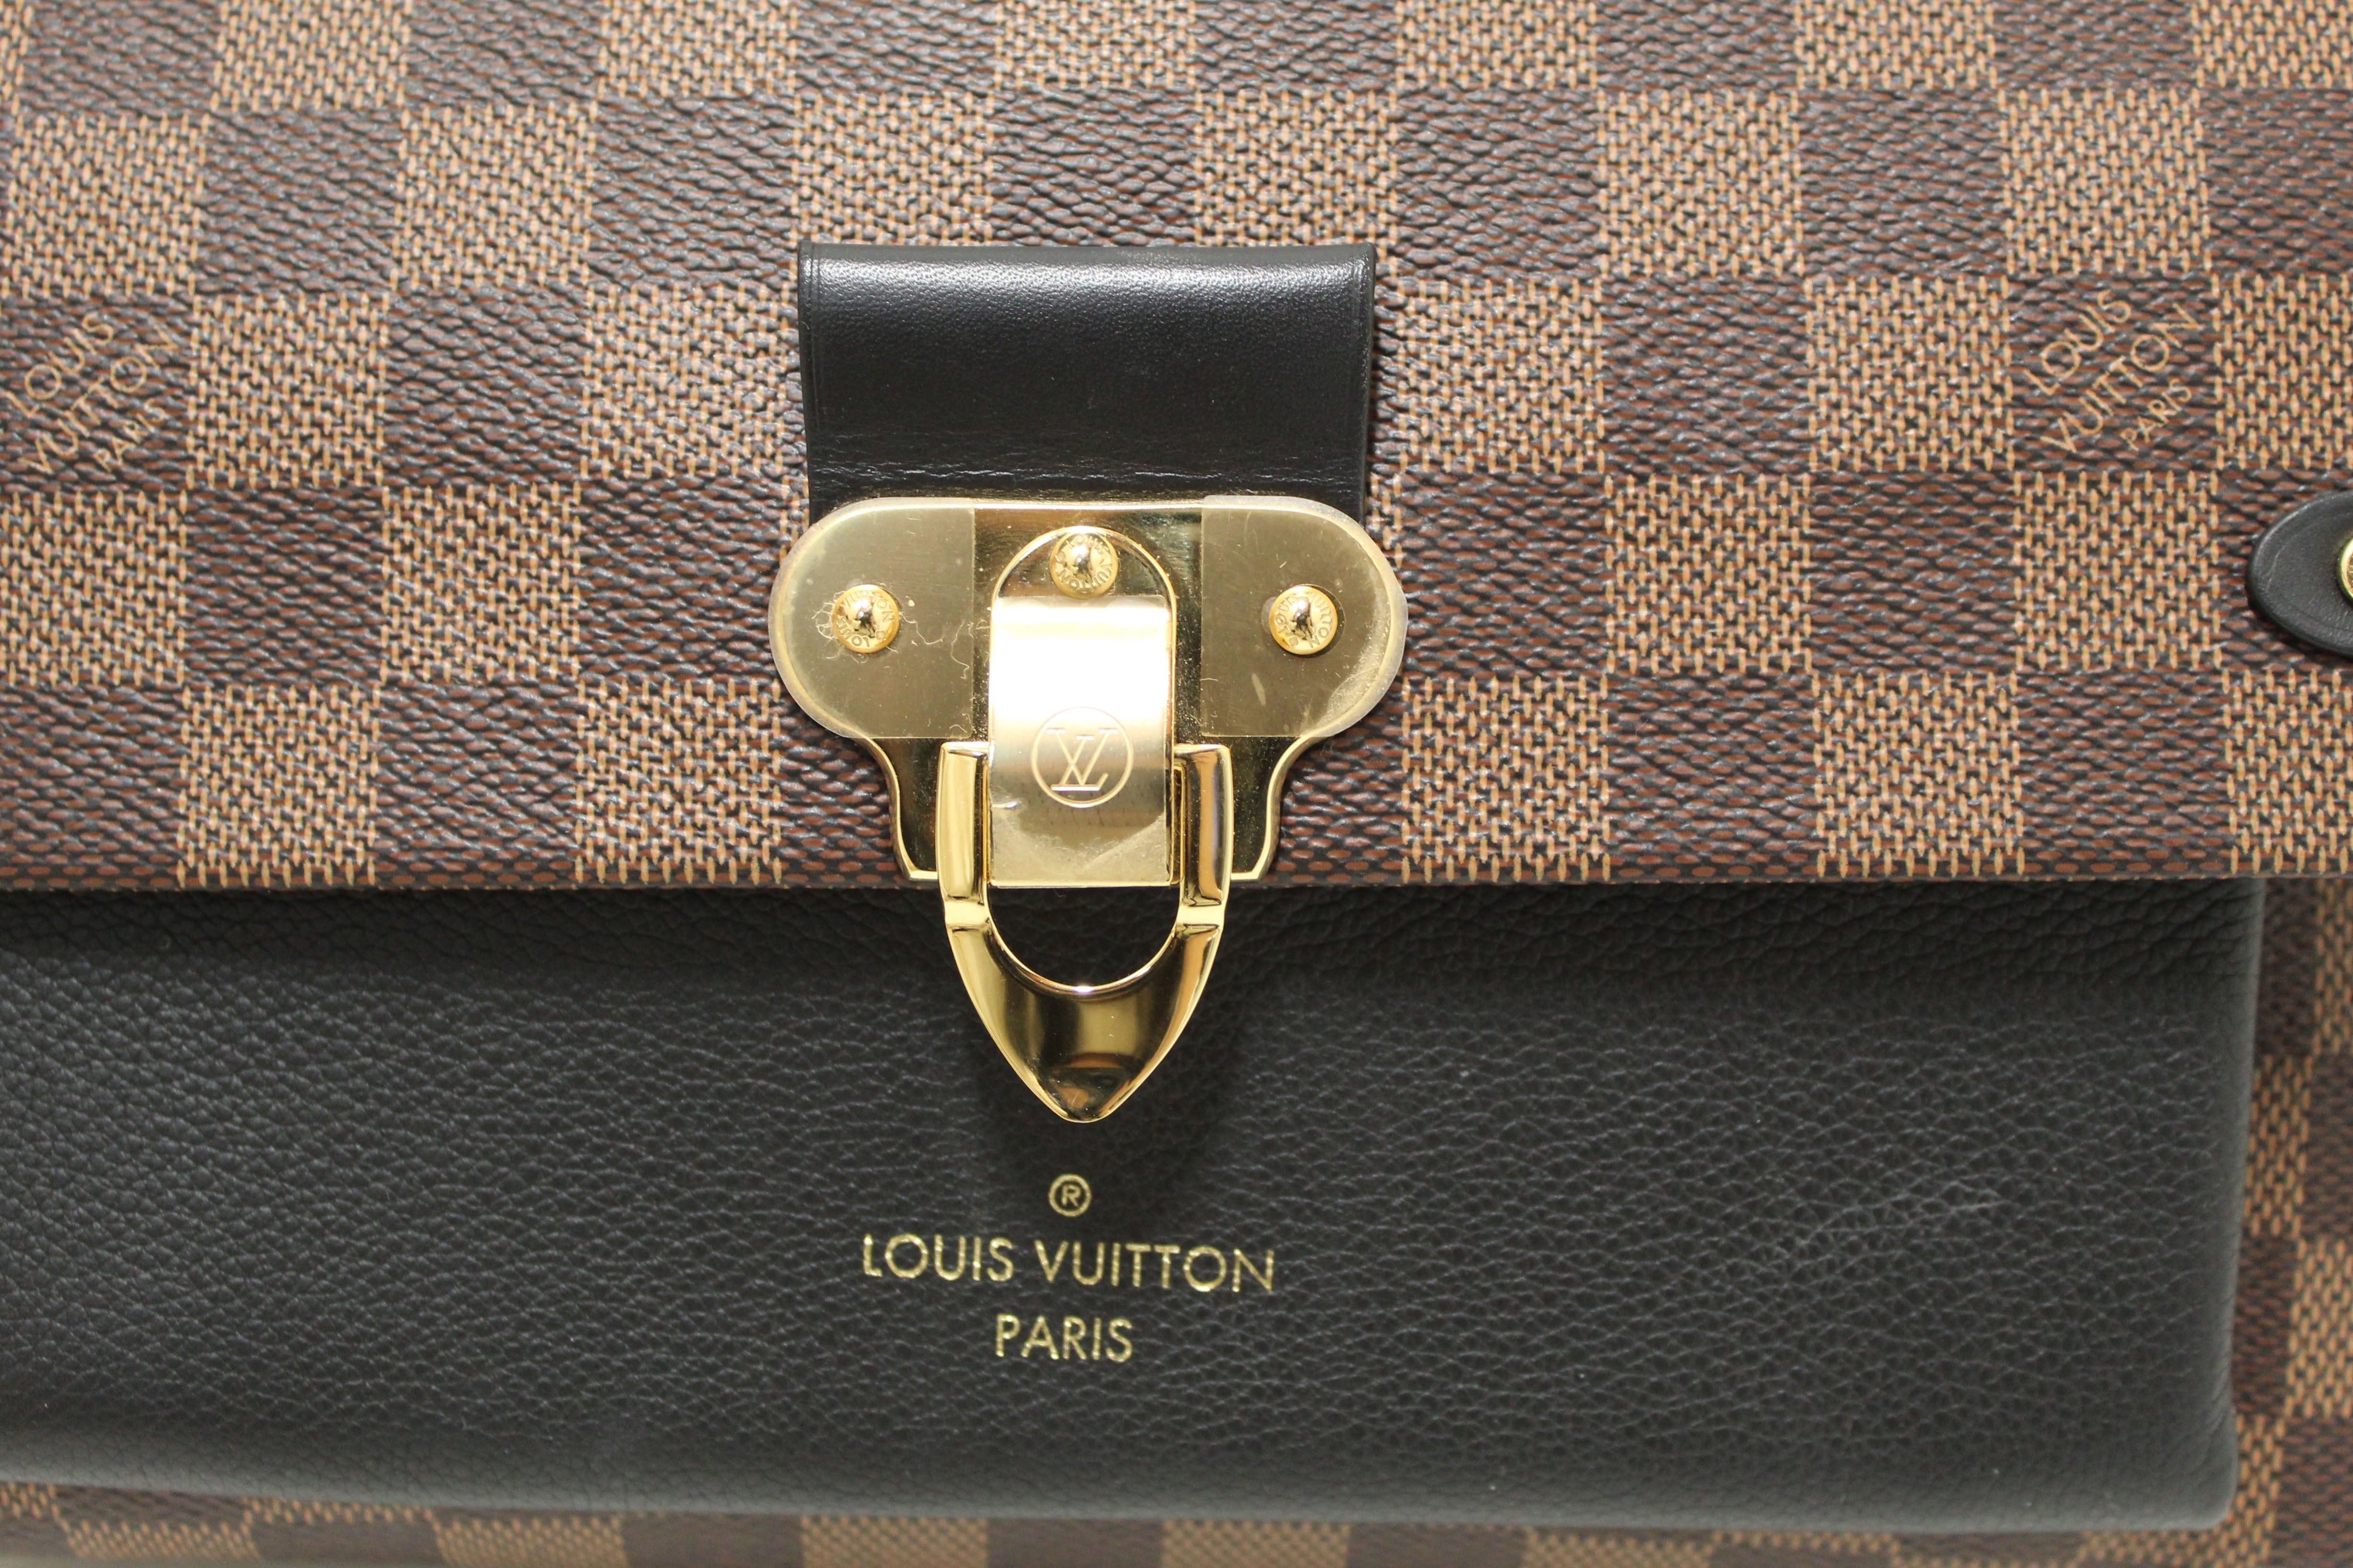 Authentic Louis Vuitton Damier Ebene Canvas with Black Soft Calf Leather Vavin PM Bag